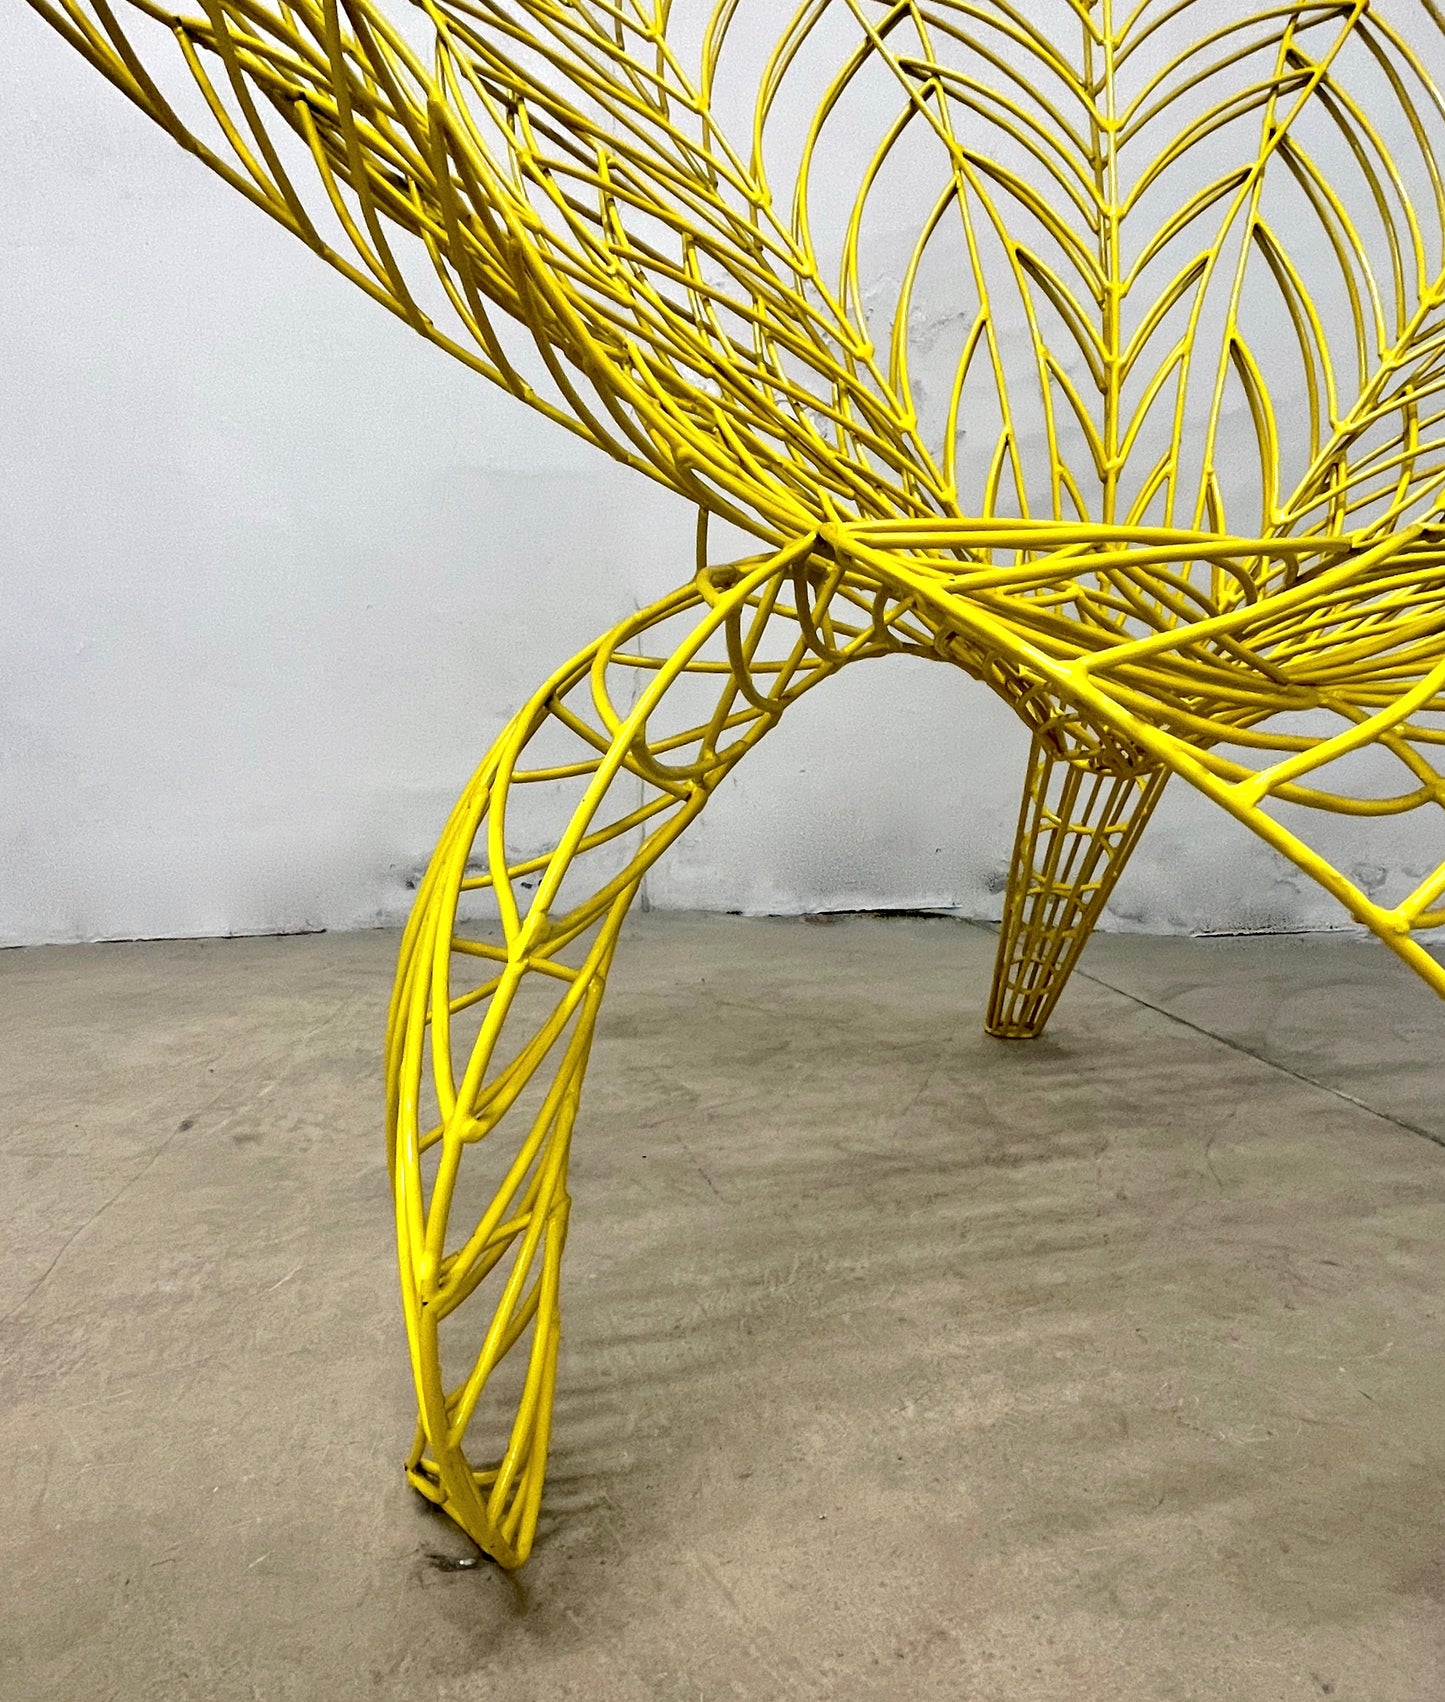 Spazzapan Italian Post-Modern Pop Art Yellow Flower Metal Sculpture Armchair